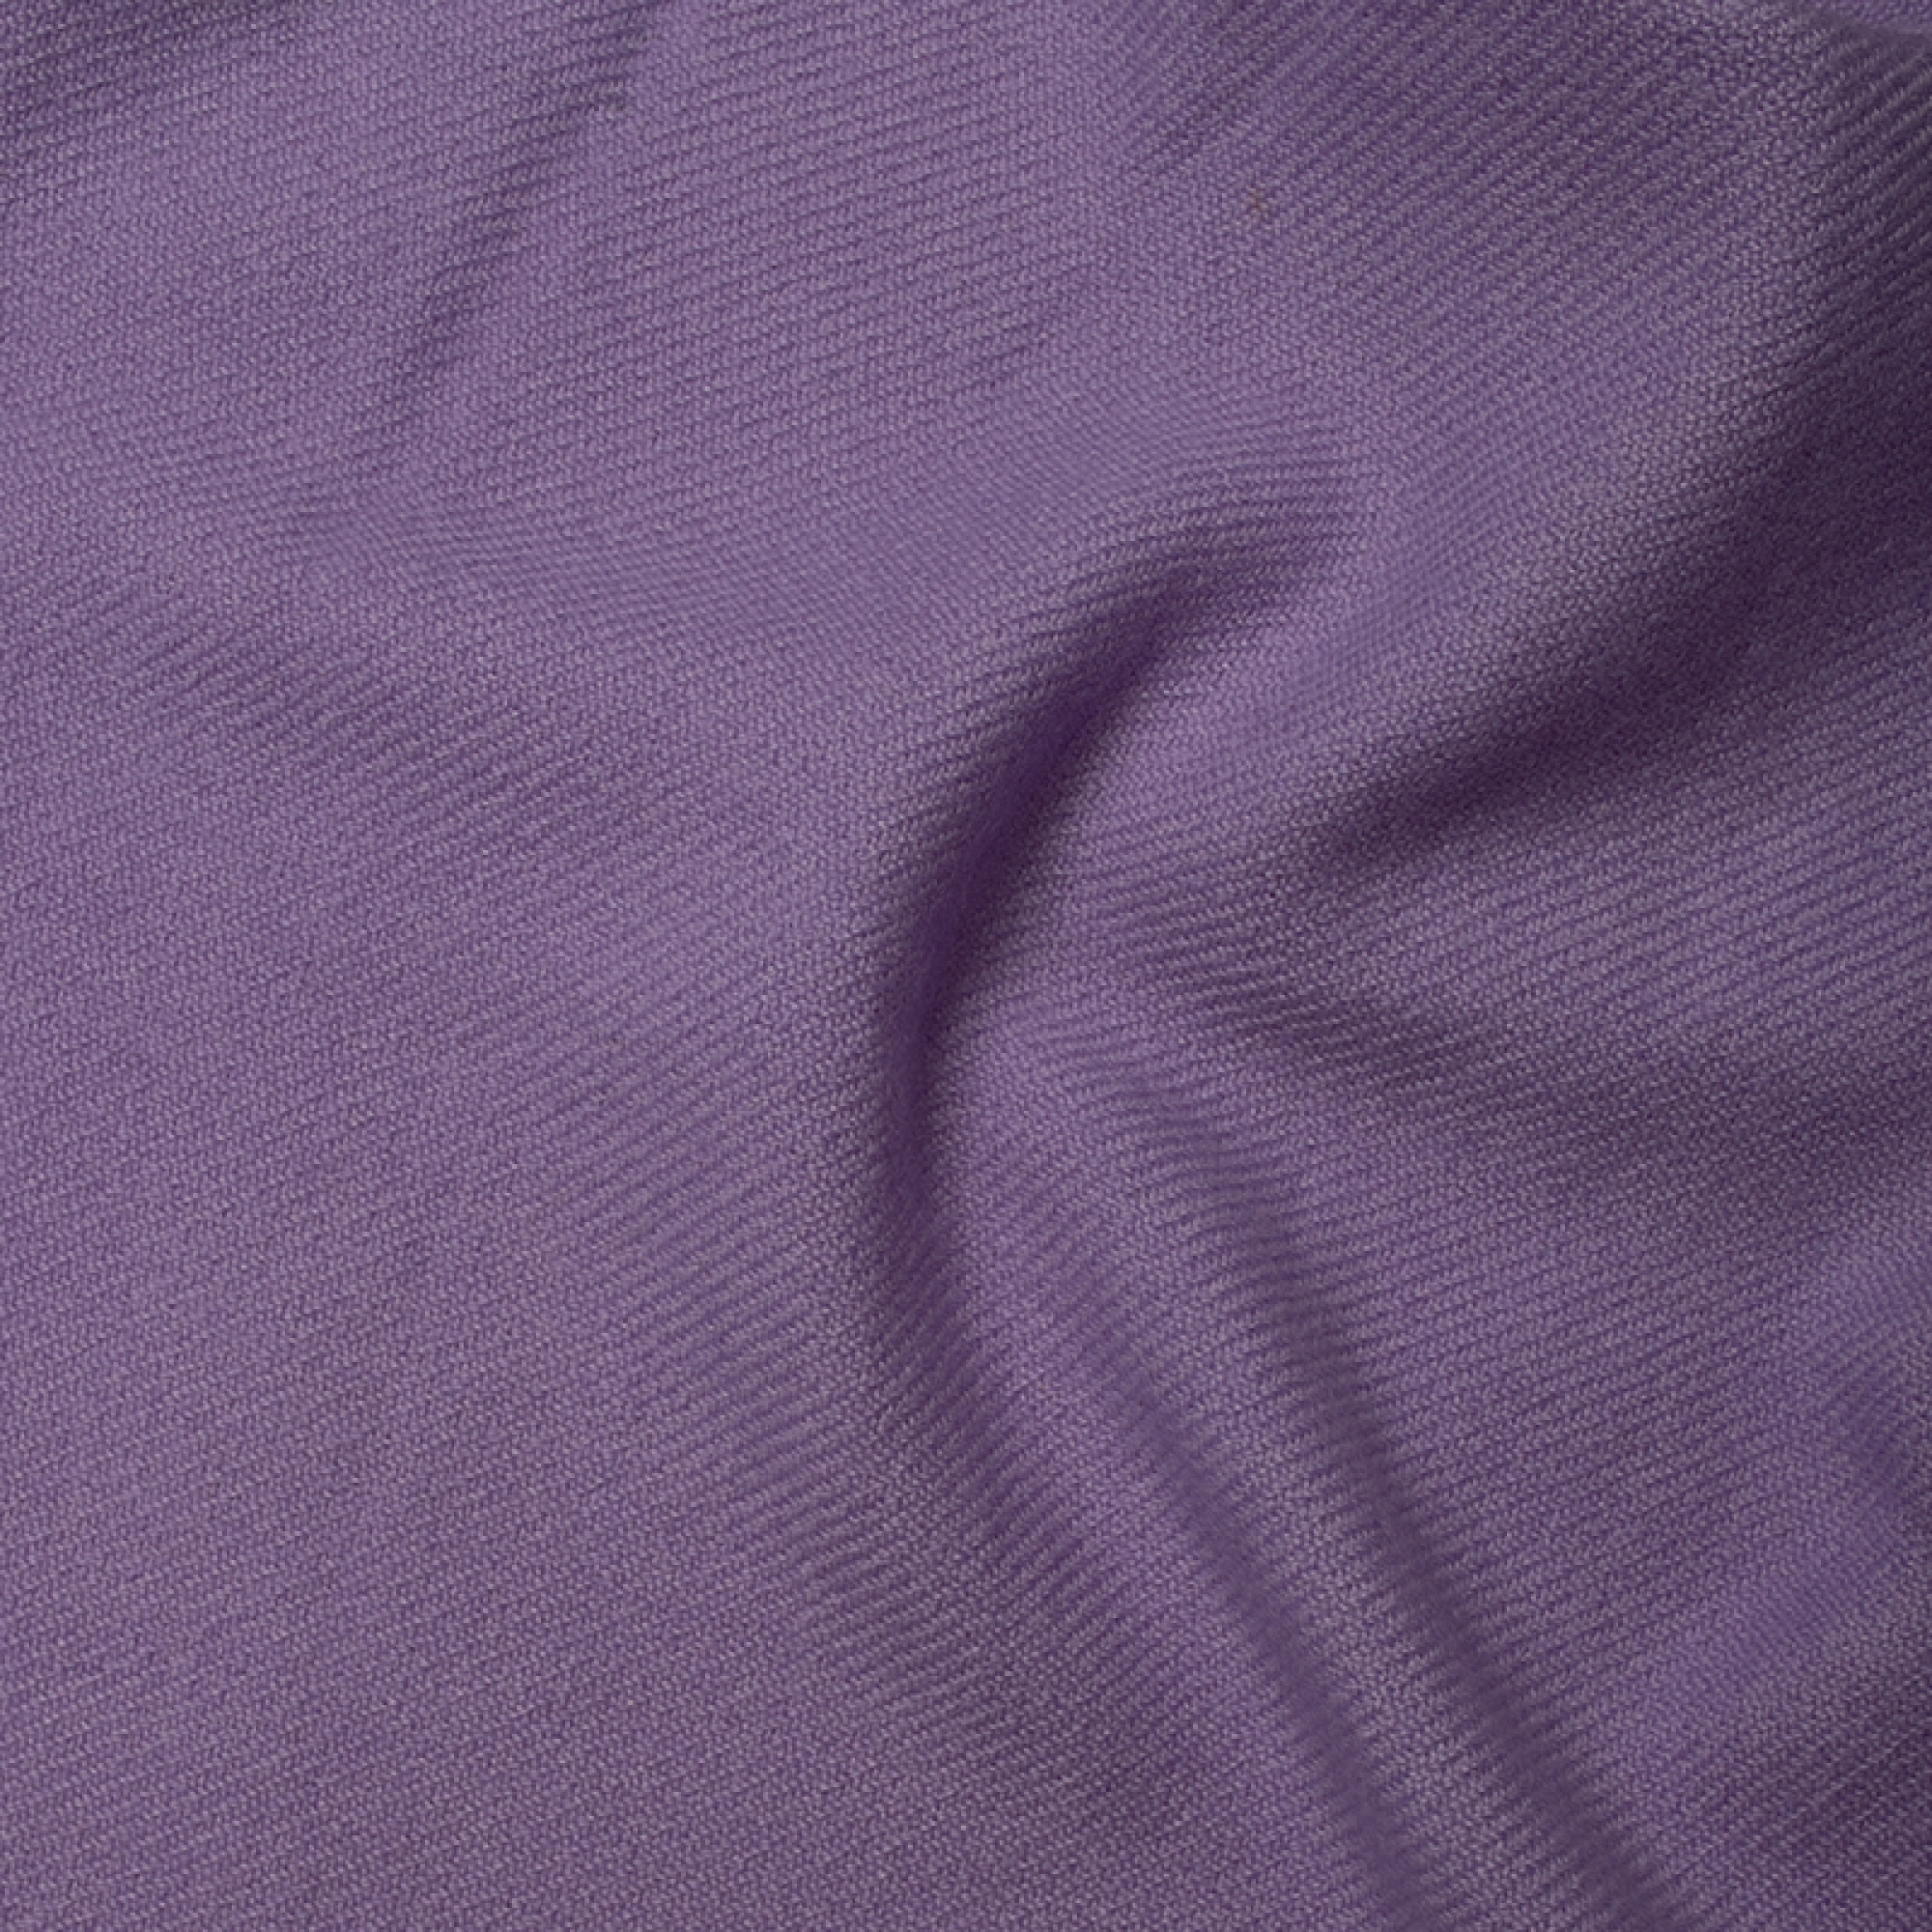 Cachemire accessoires couvertures plaids toodoo plain m 180 x 220 lavande ensoleillee 180 x 220 cm